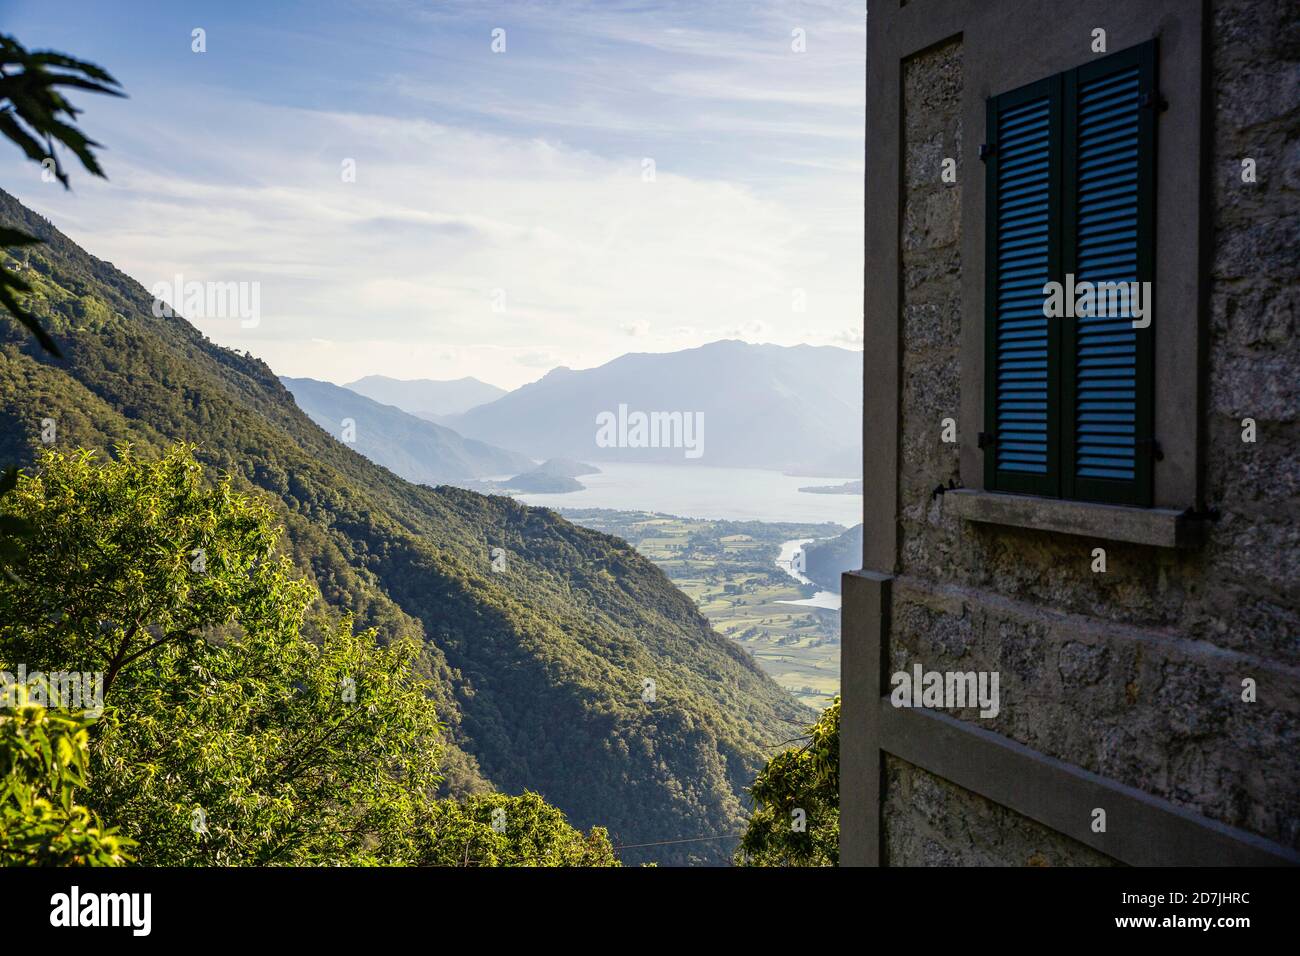 Italia, Provincia di Sondrio, angolo di costruzione affacciato sulla valle nella Riserva Naturale Pian di Spagna e Lago di Mezzola Foto Stock